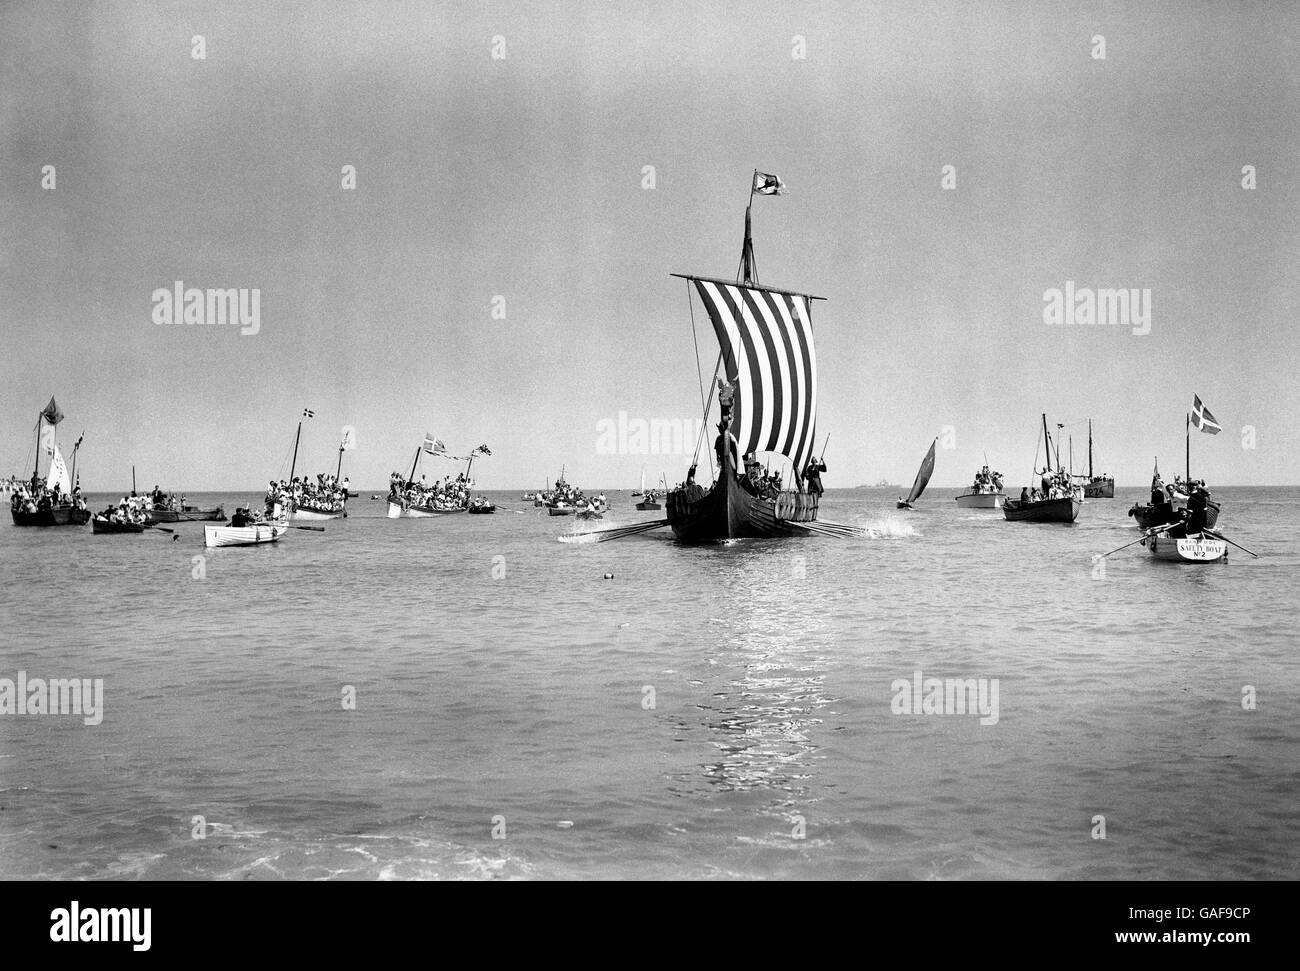 El barco vikingo, rodeado de barcos de todo tipo y tamaños, lo que hace que la playa de Broadstairs. Foto de stock